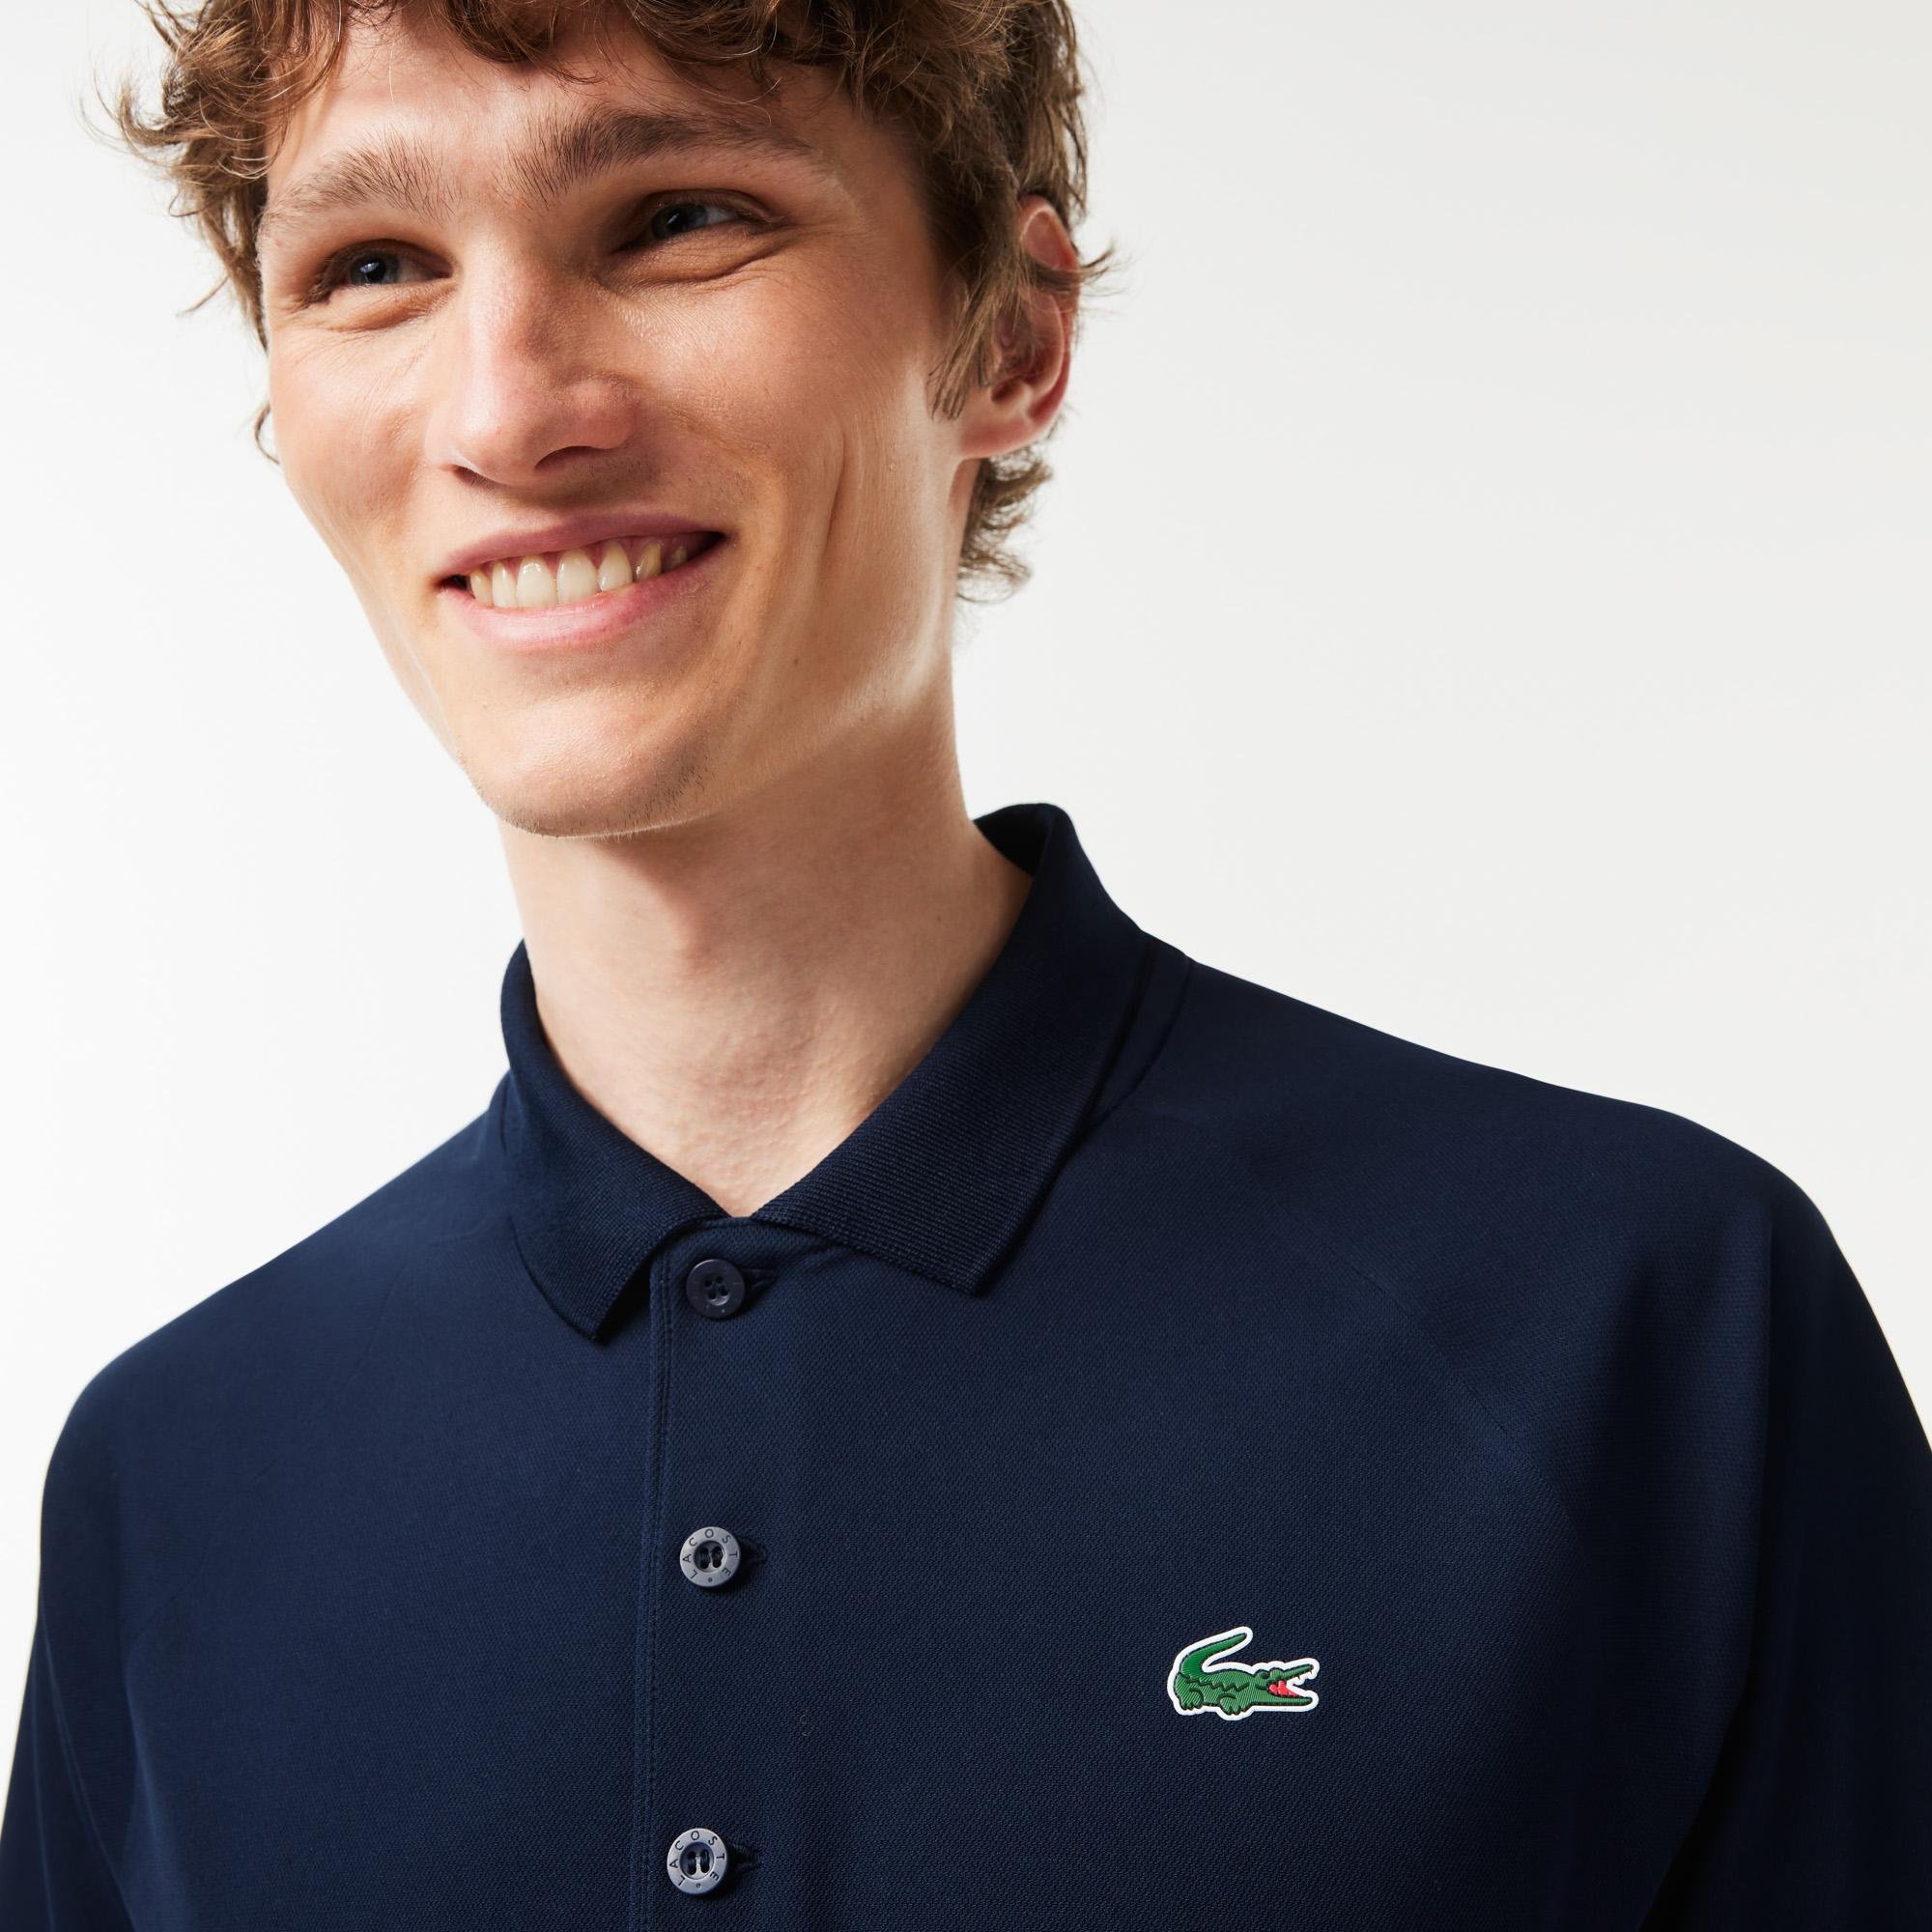 Lacoste SPORT pánská prodyšná interlocková košile s úpravou Run Resistant, která zajišťuje odvod vlhkosti a rychlé schnutí